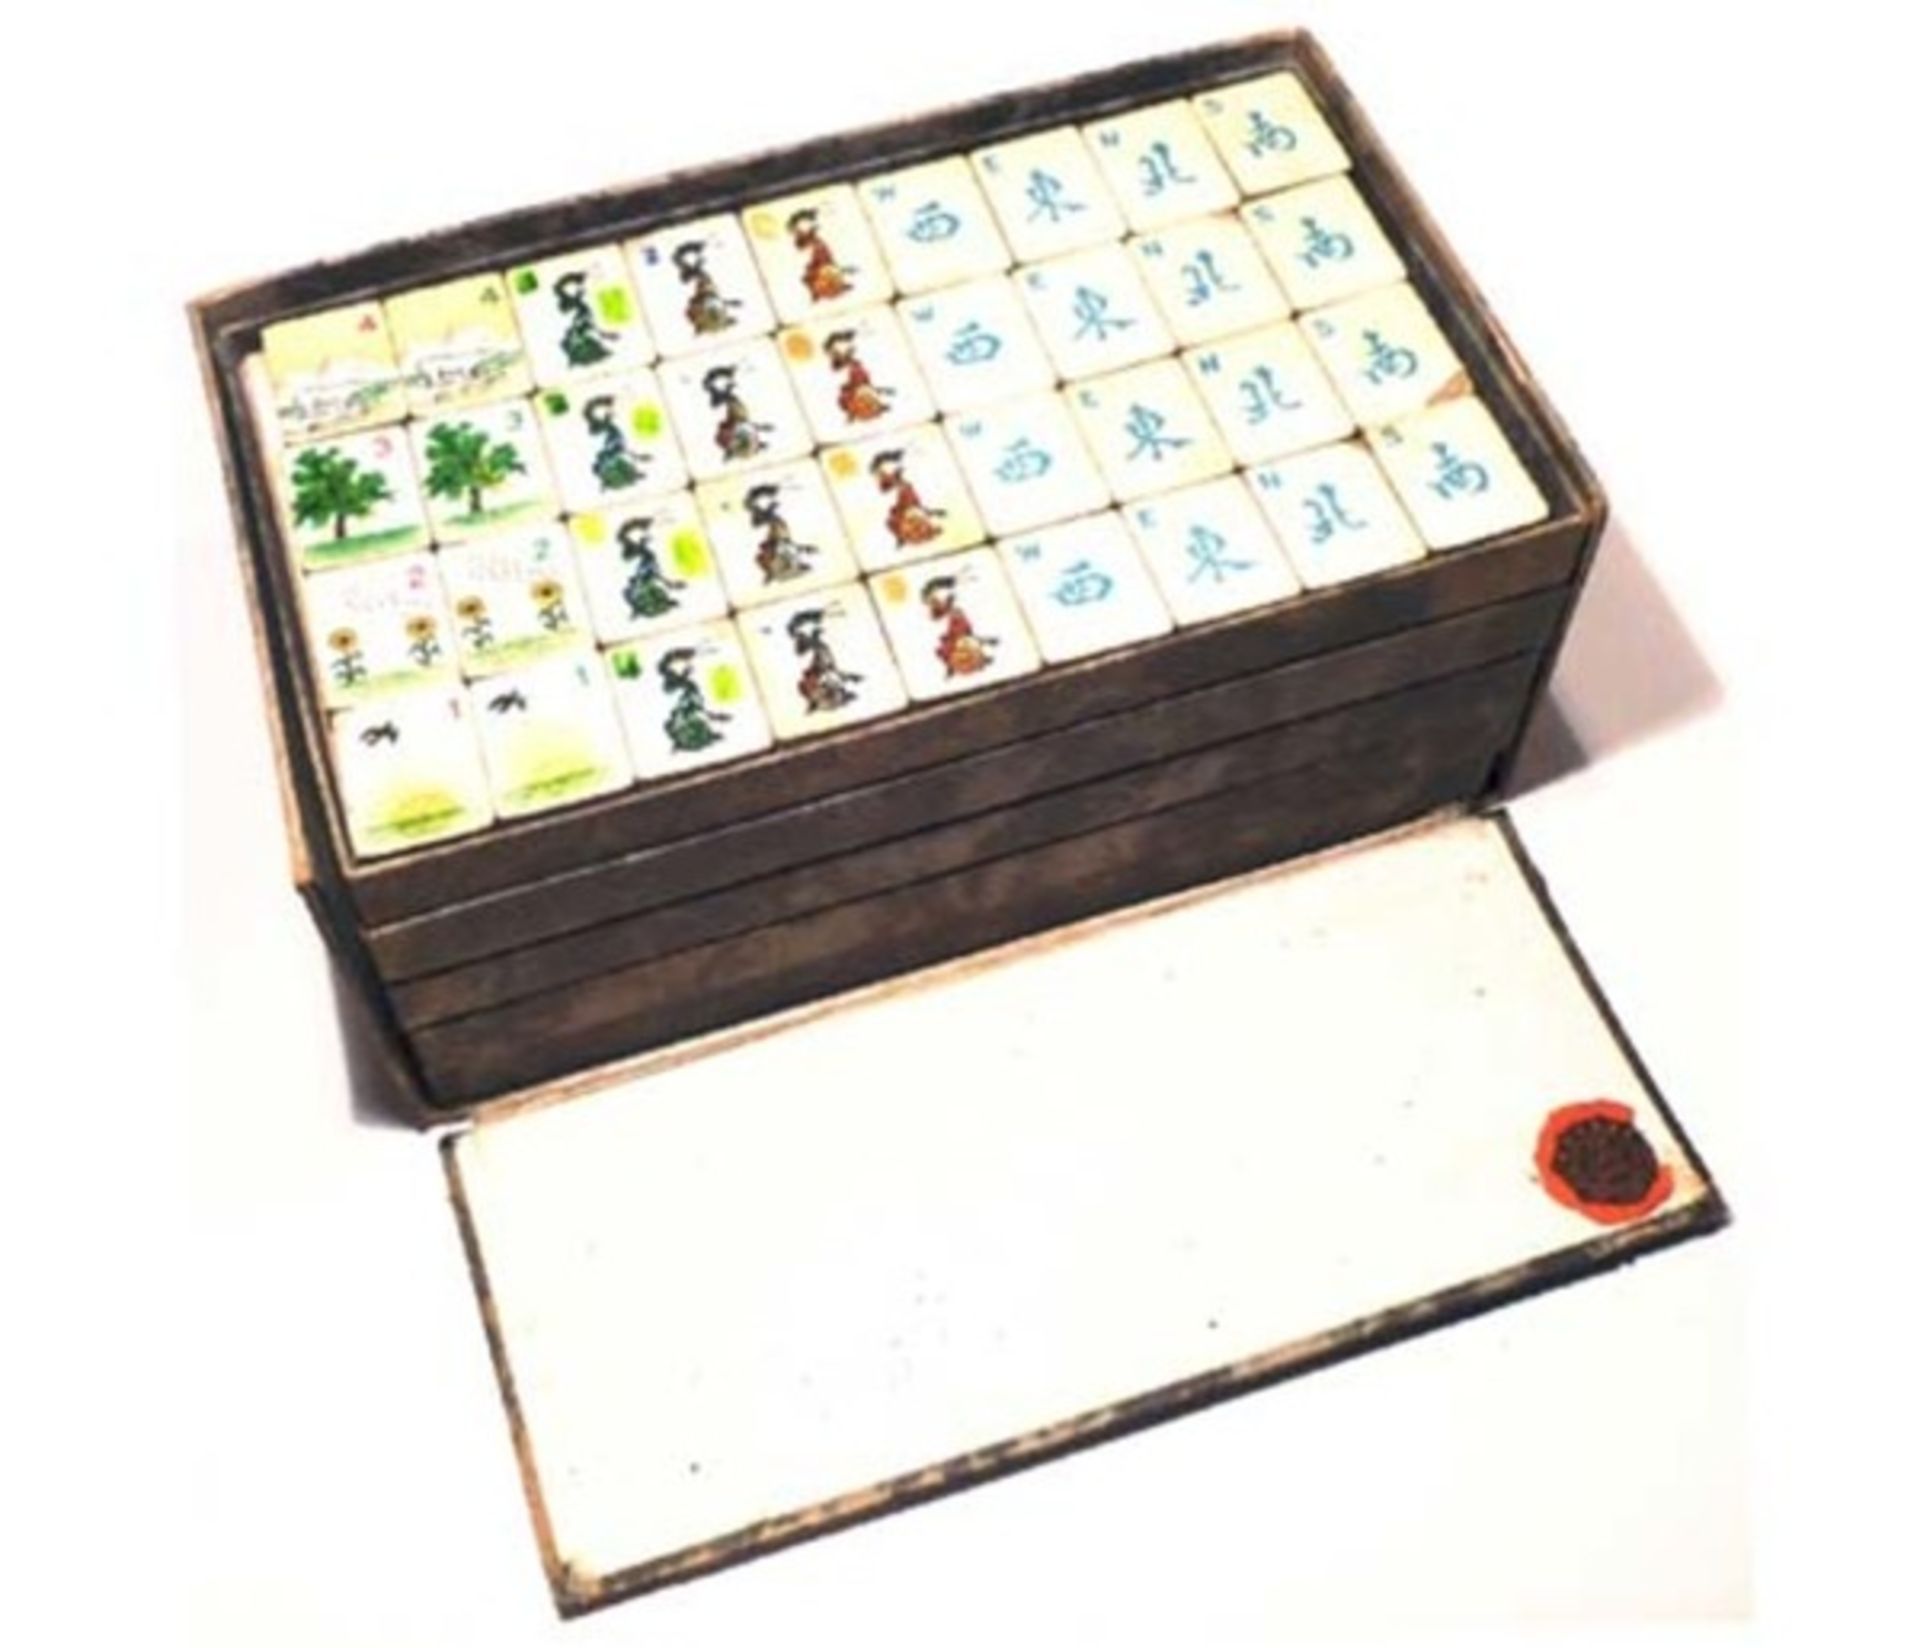 (Mahjong) Mahjong Europees, De Sala Spelen met het Rode zegel, ca. 1930 - Bild 2 aus 16